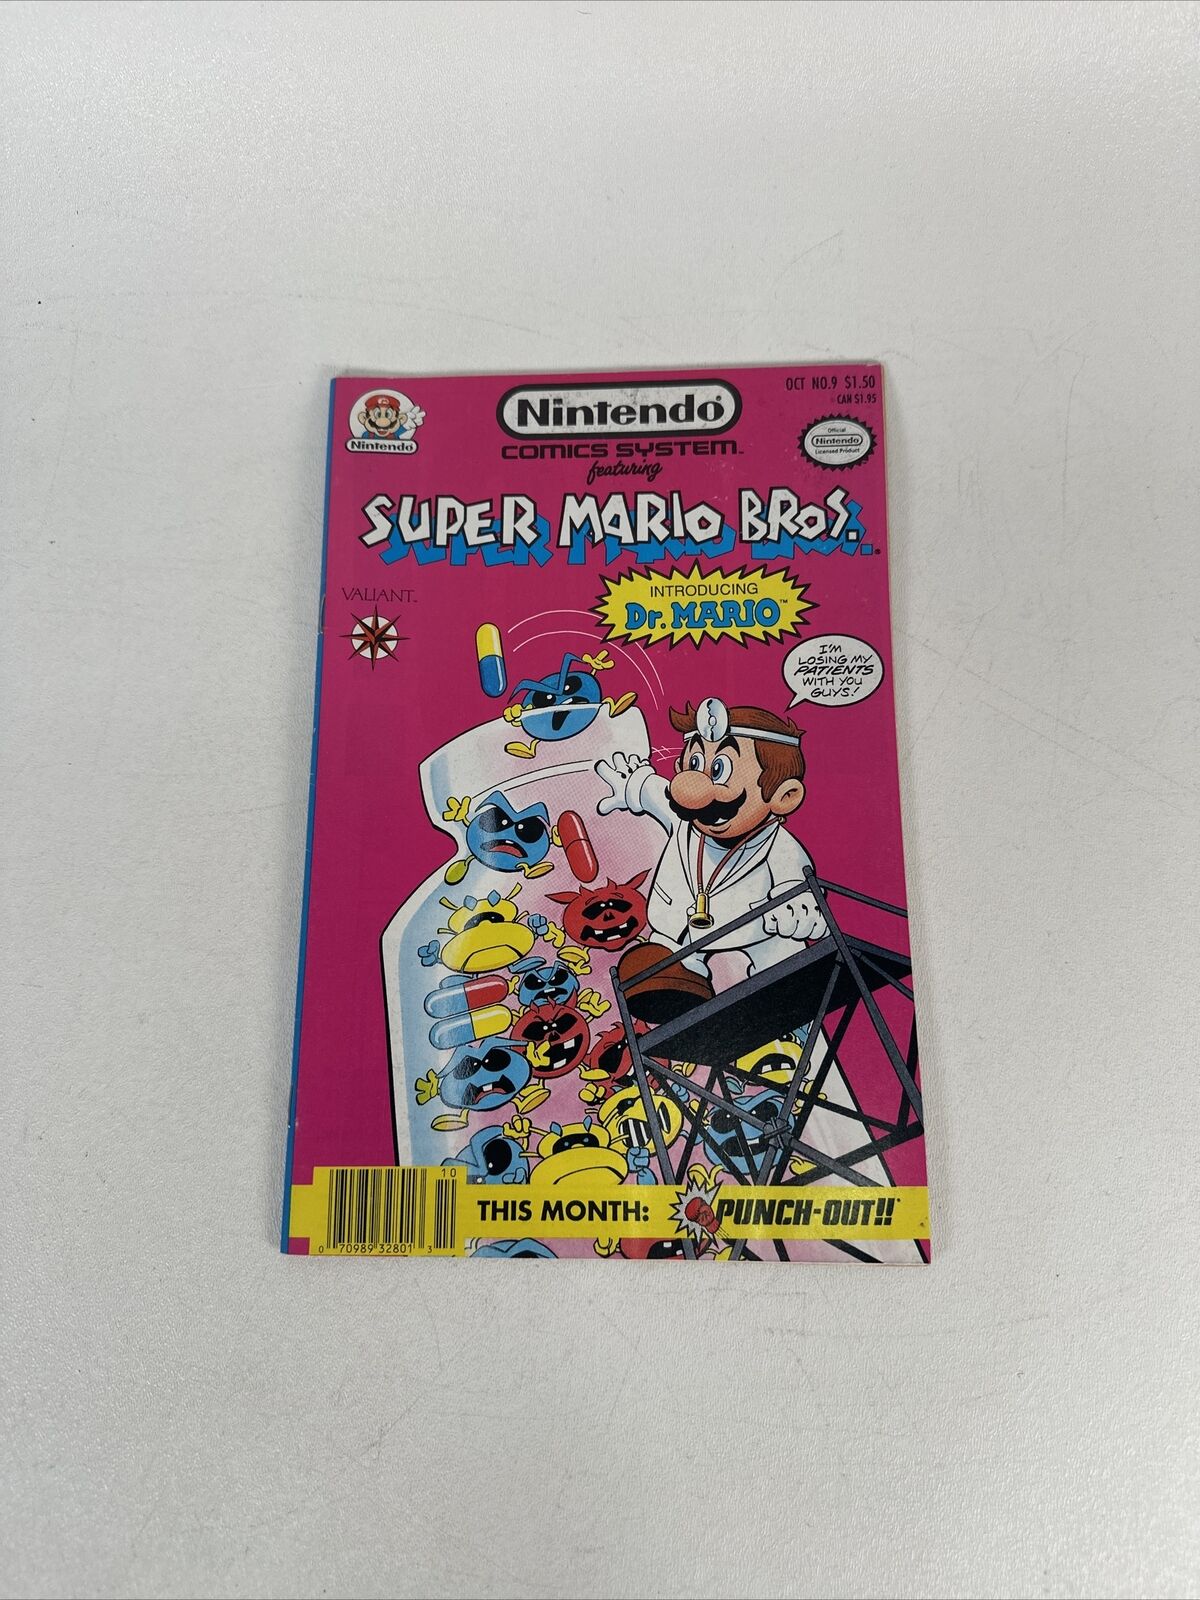 Nintendo Comics System 9 Valiant Comics Featuring Super Mario Bros Dr. Mario